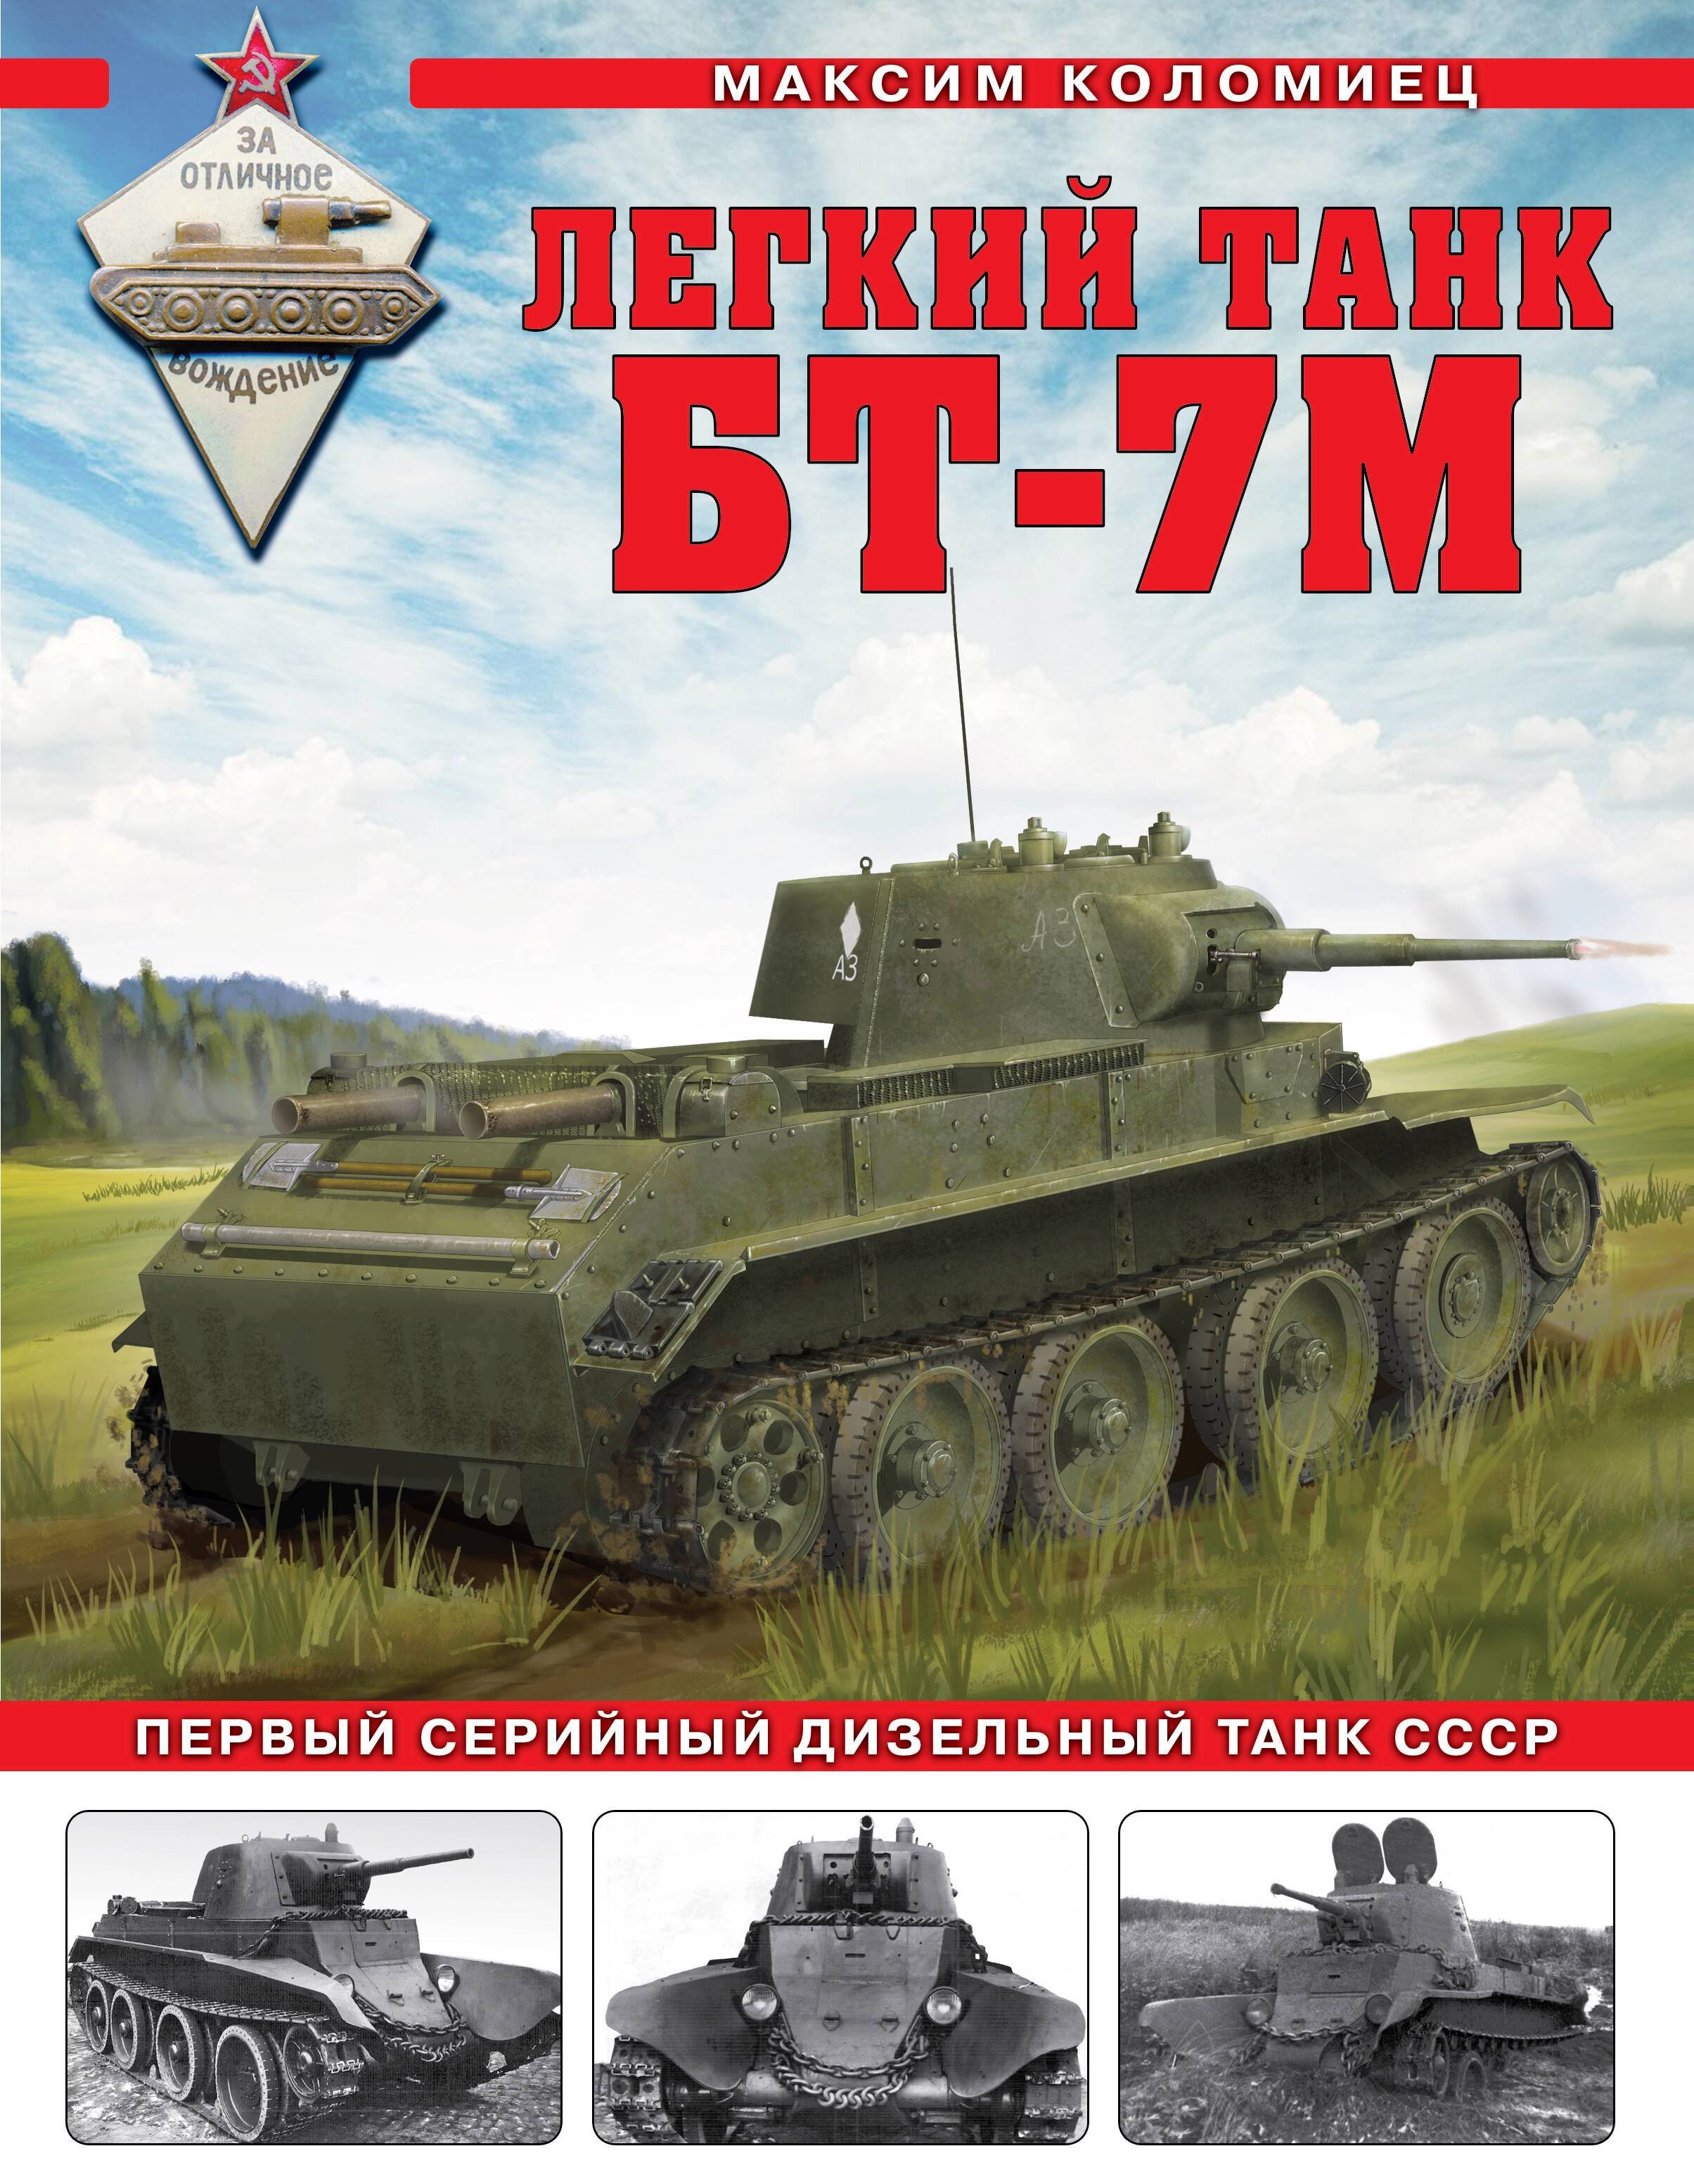 Коломиец Максим Викторович - Легкий танк БТ-7М. Первый серийный дизельный танк СССР